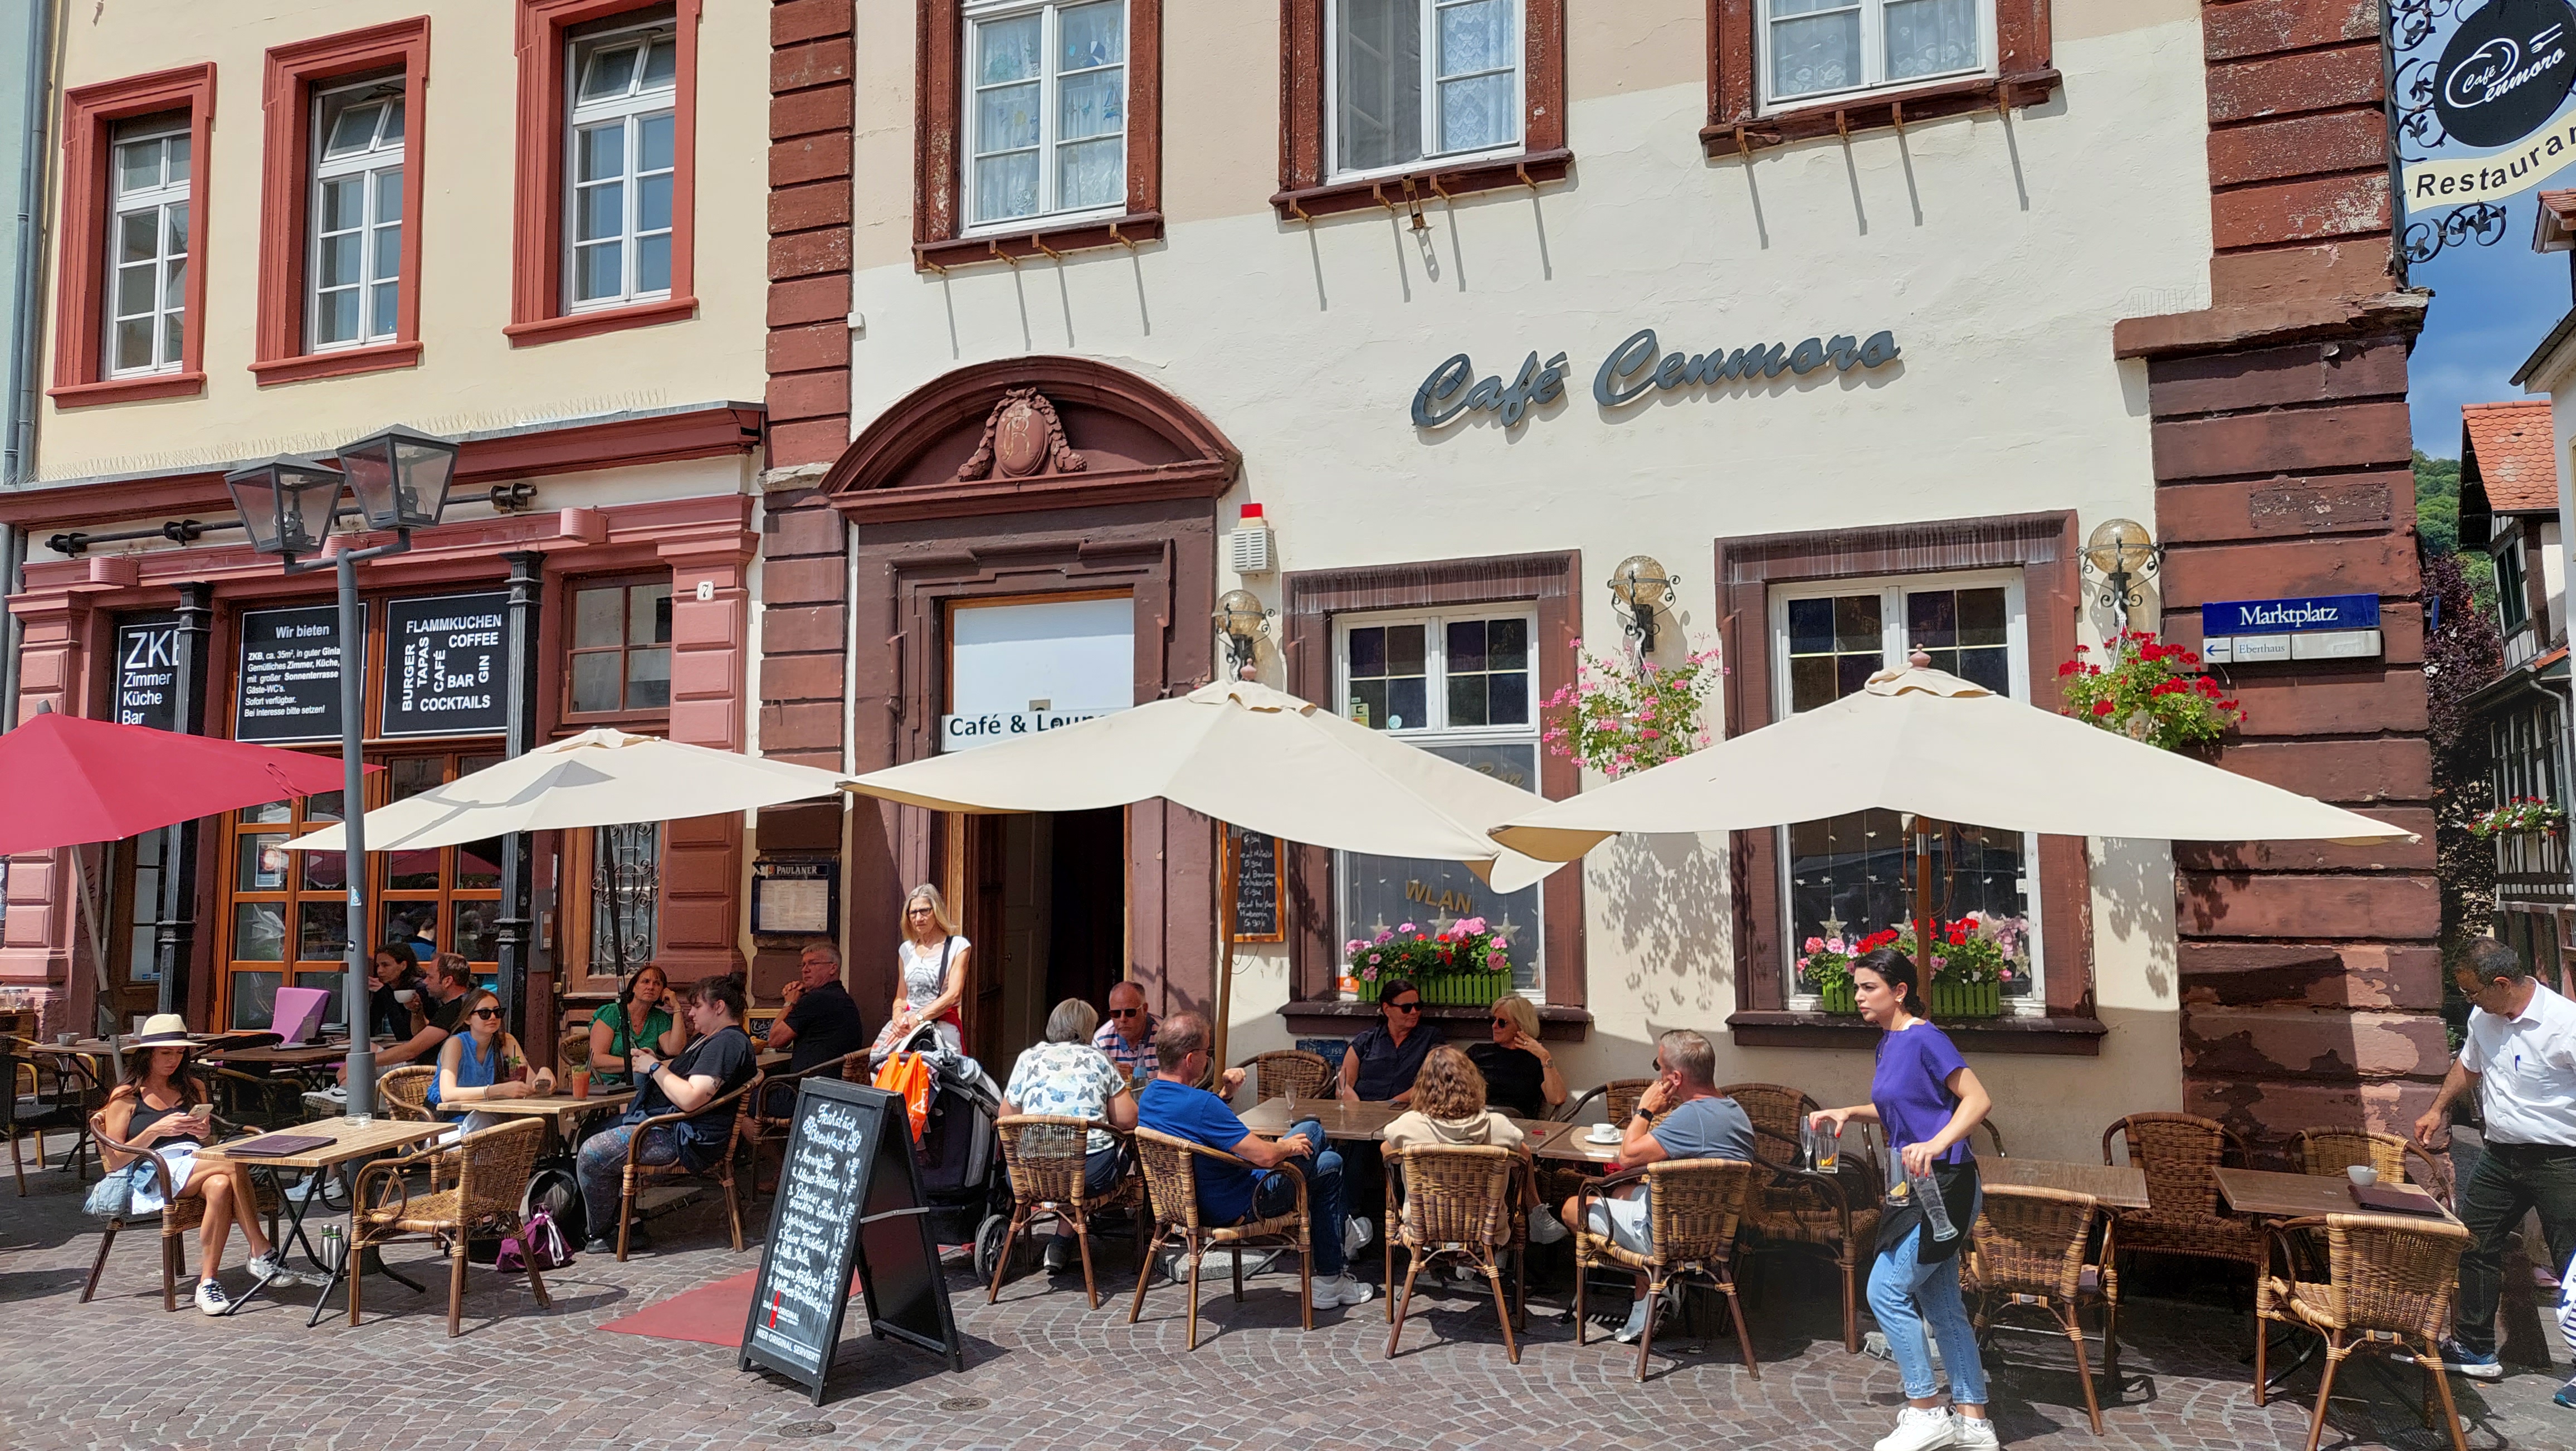 Bild 1 Cafe Cenmoro in Heidelberg